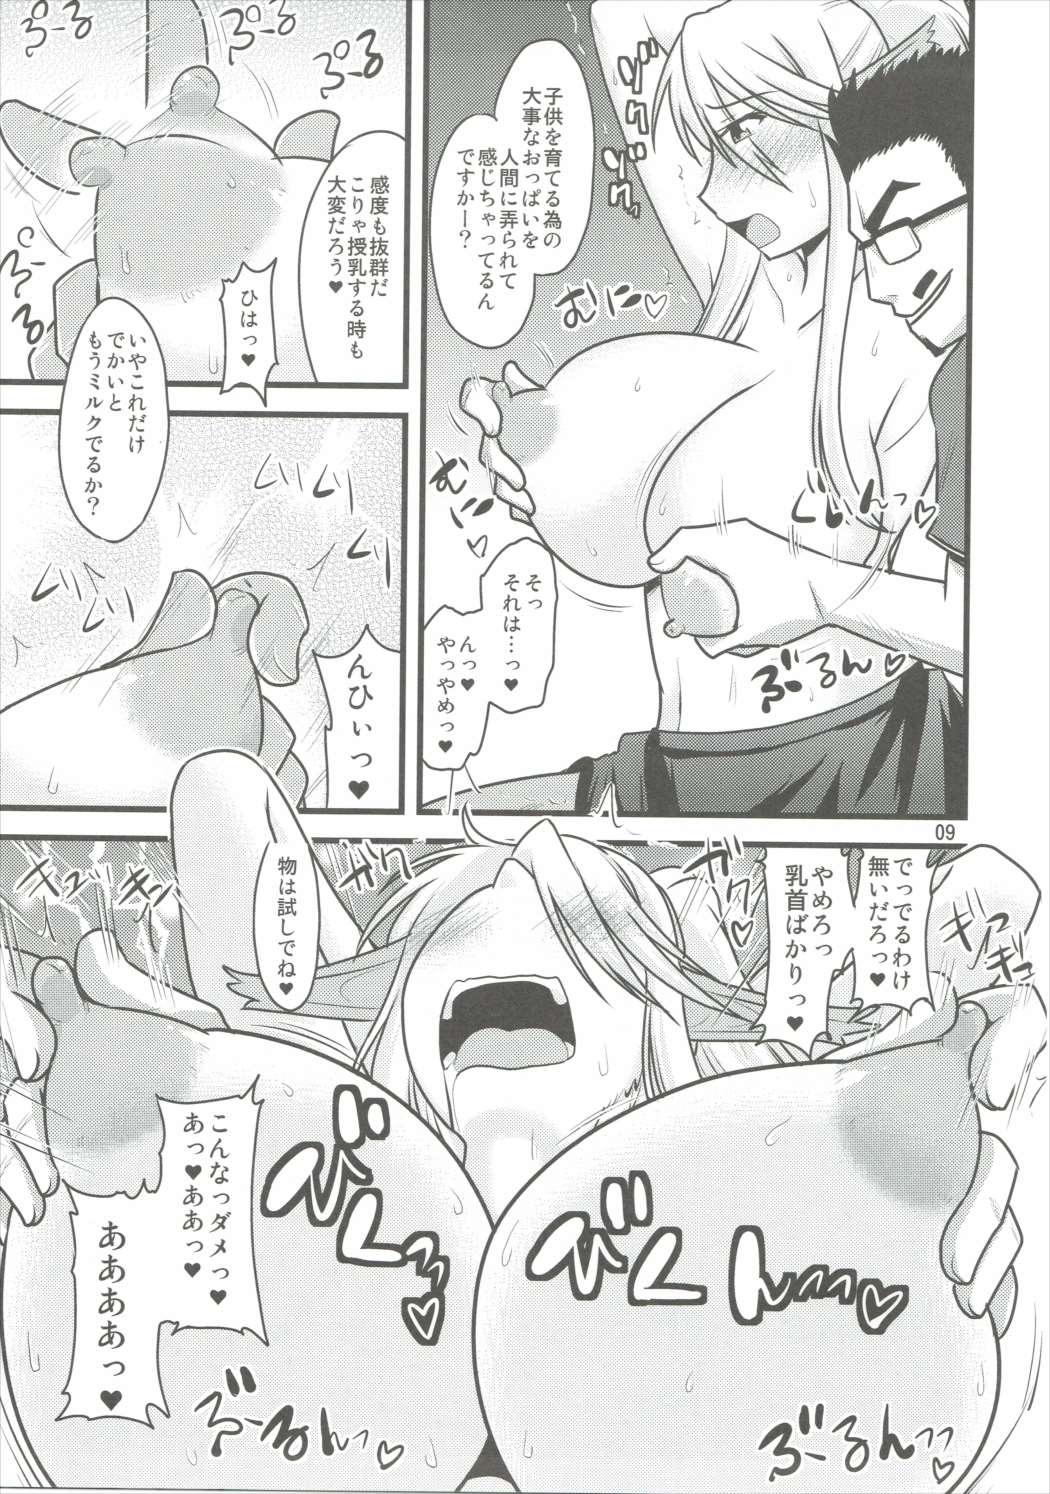 Amature Umanko NTR Satsueikai - Monster musume no iru nichijou Thylinh - Page 8